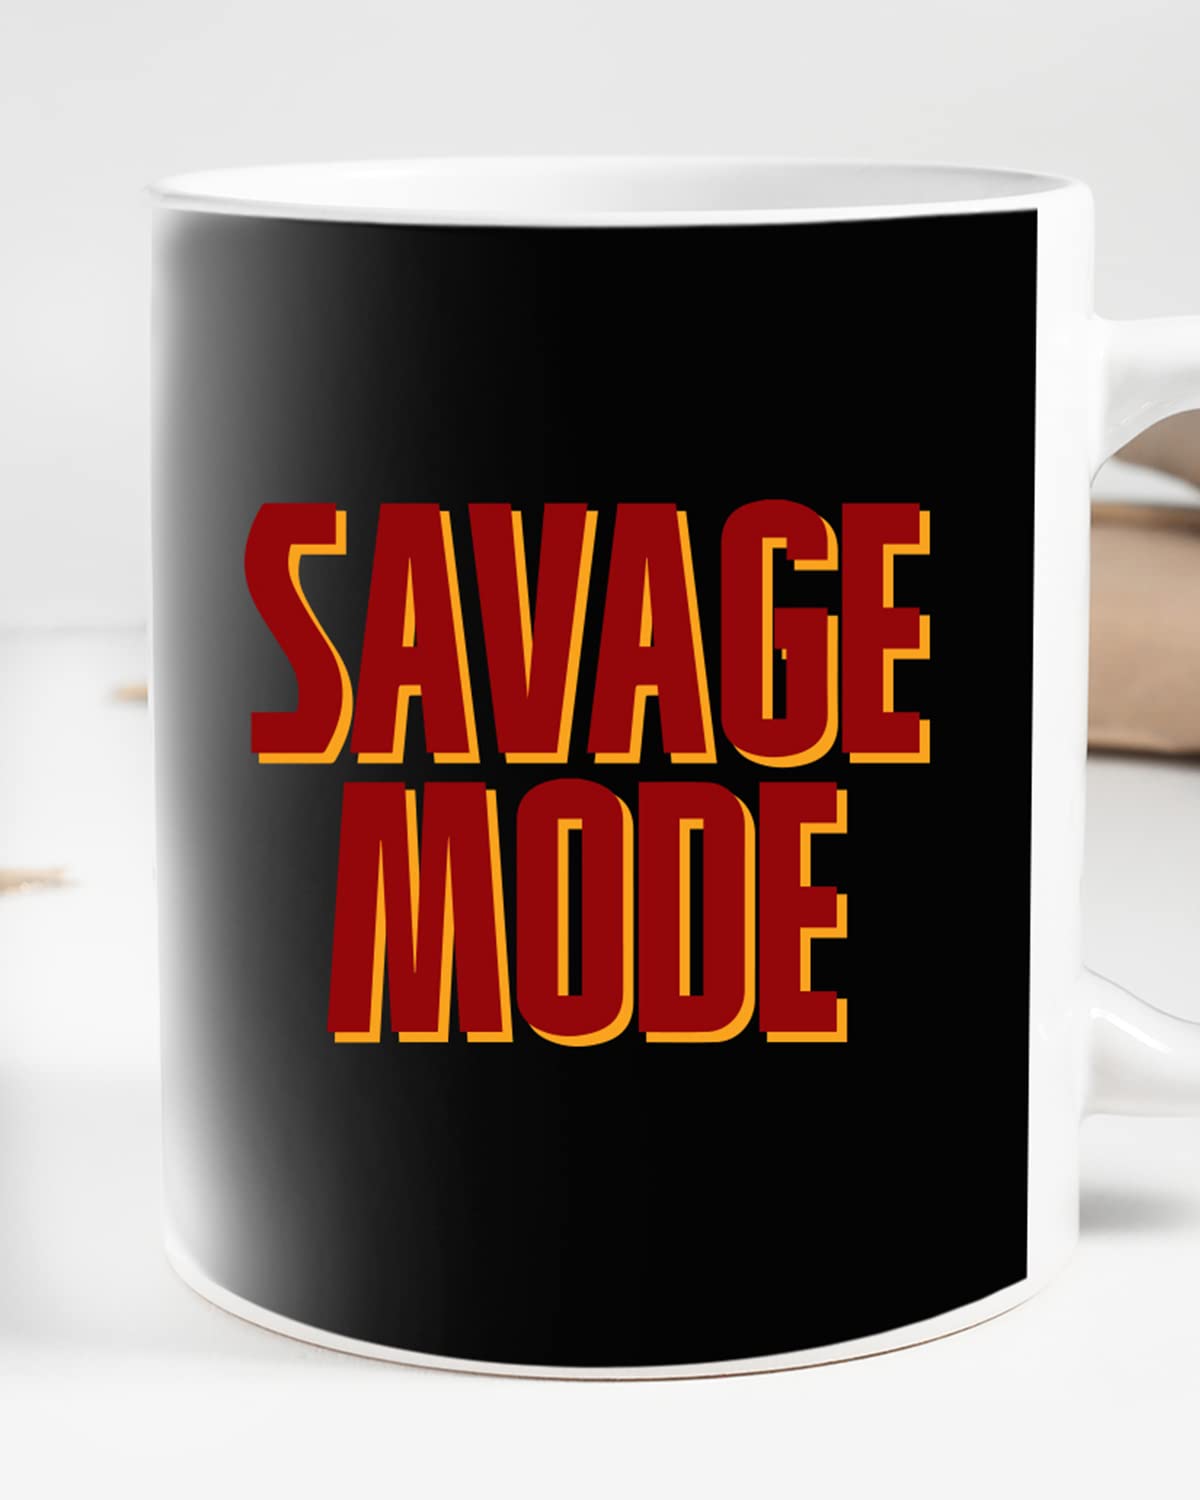 Savage Mode Coffee Mug - Gift for Friend, Birthday Gift, Birthday Mug, Sarcasm Quotes Mug, Mugs with Funny & Funky Dialogues, Bollywood Mugs, Funny Mugs for Him & Her